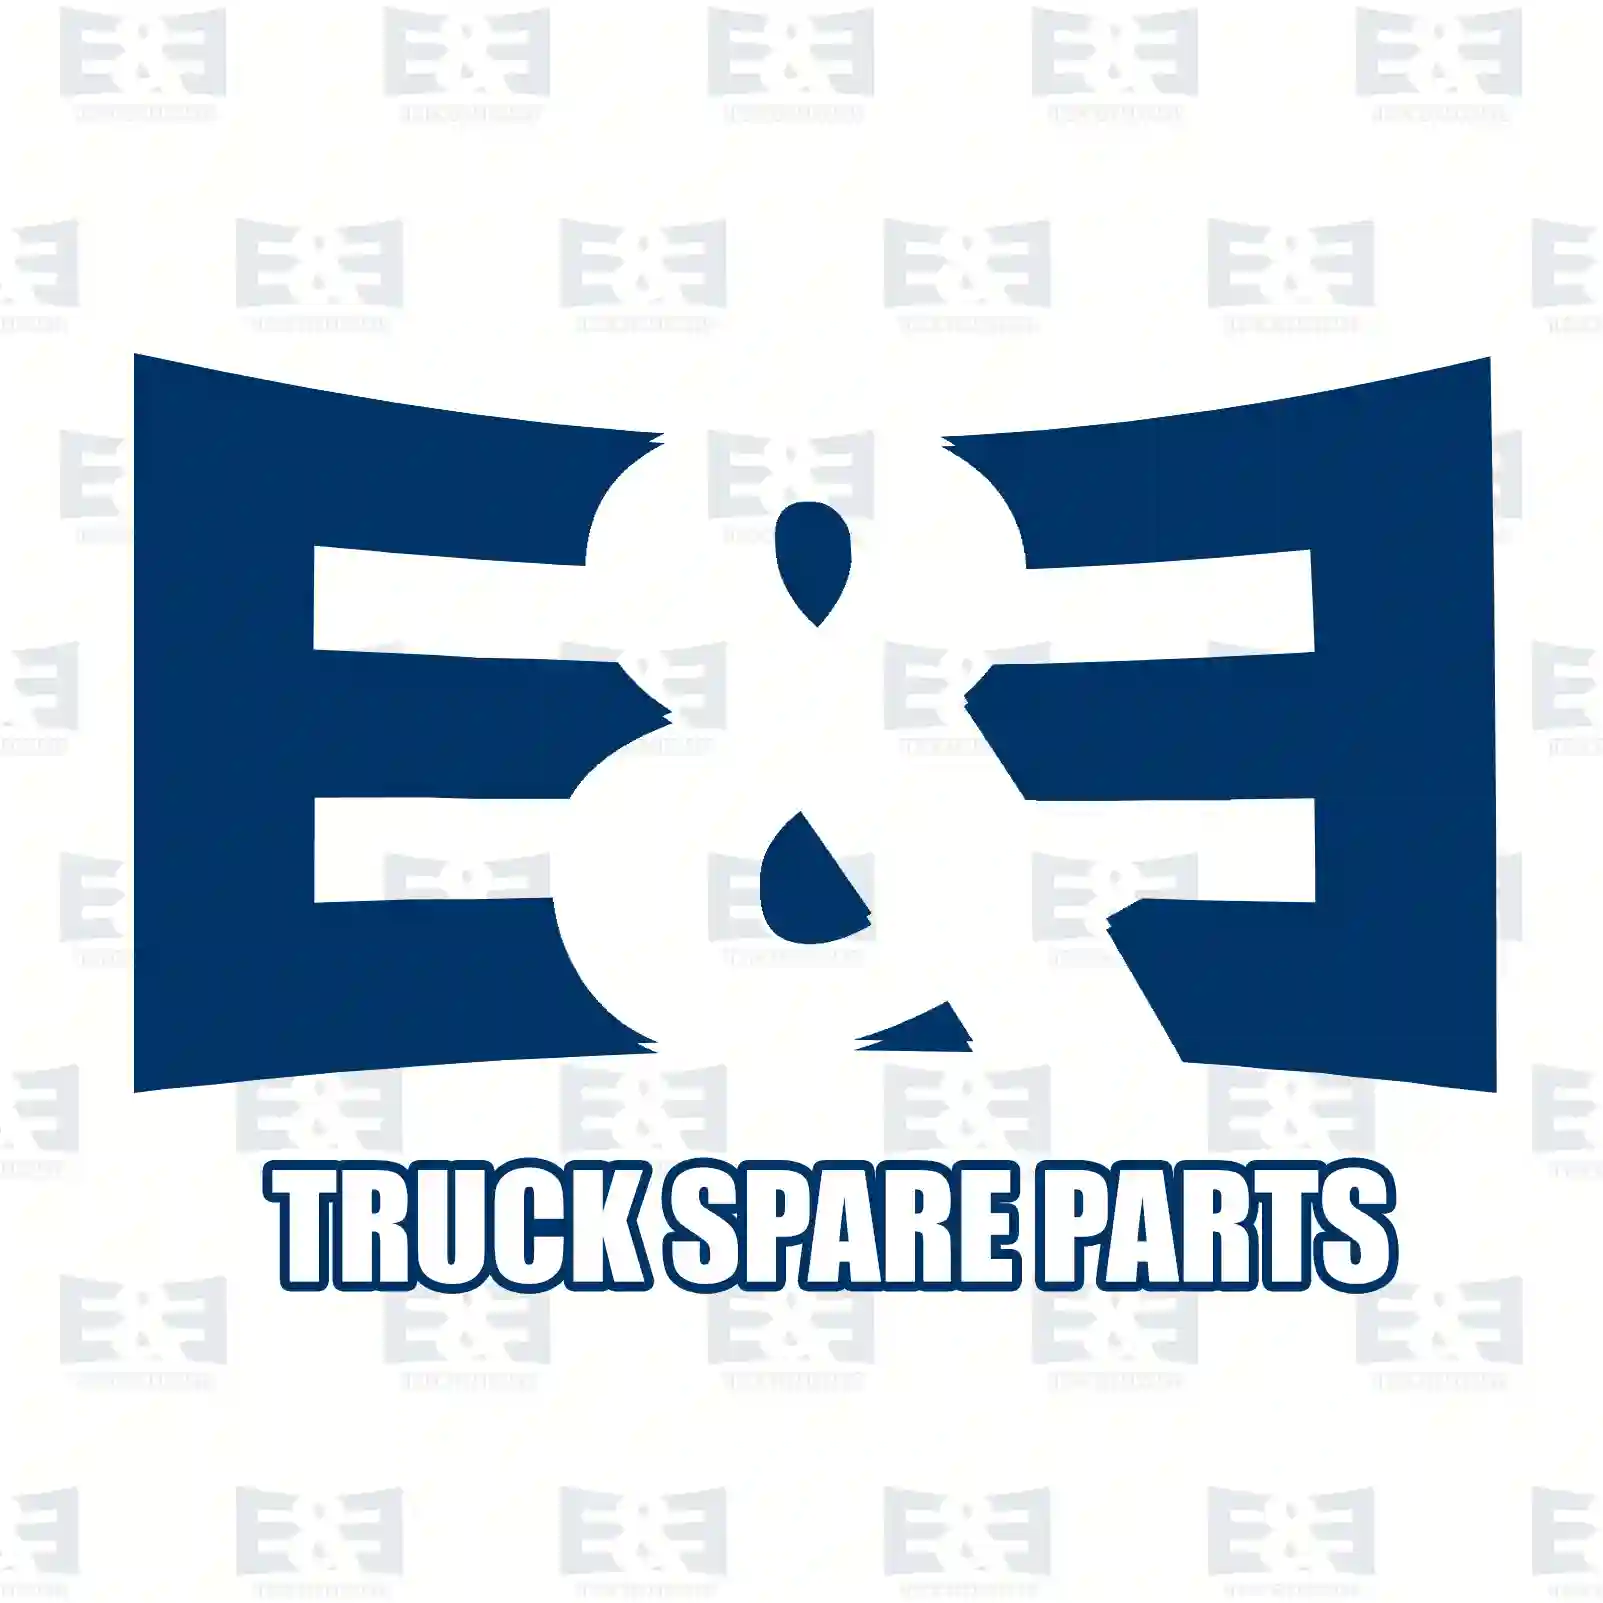 General overhaul kit, 2E2200429, 550190, 550227, 551459, 551516 ||  2E2200429 E&E Truck Spare Parts | Truck Spare Parts, Auotomotive Spare Parts General overhaul kit, 2E2200429, 550190, 550227, 551459, 551516 ||  2E2200429 E&E Truck Spare Parts | Truck Spare Parts, Auotomotive Spare Parts